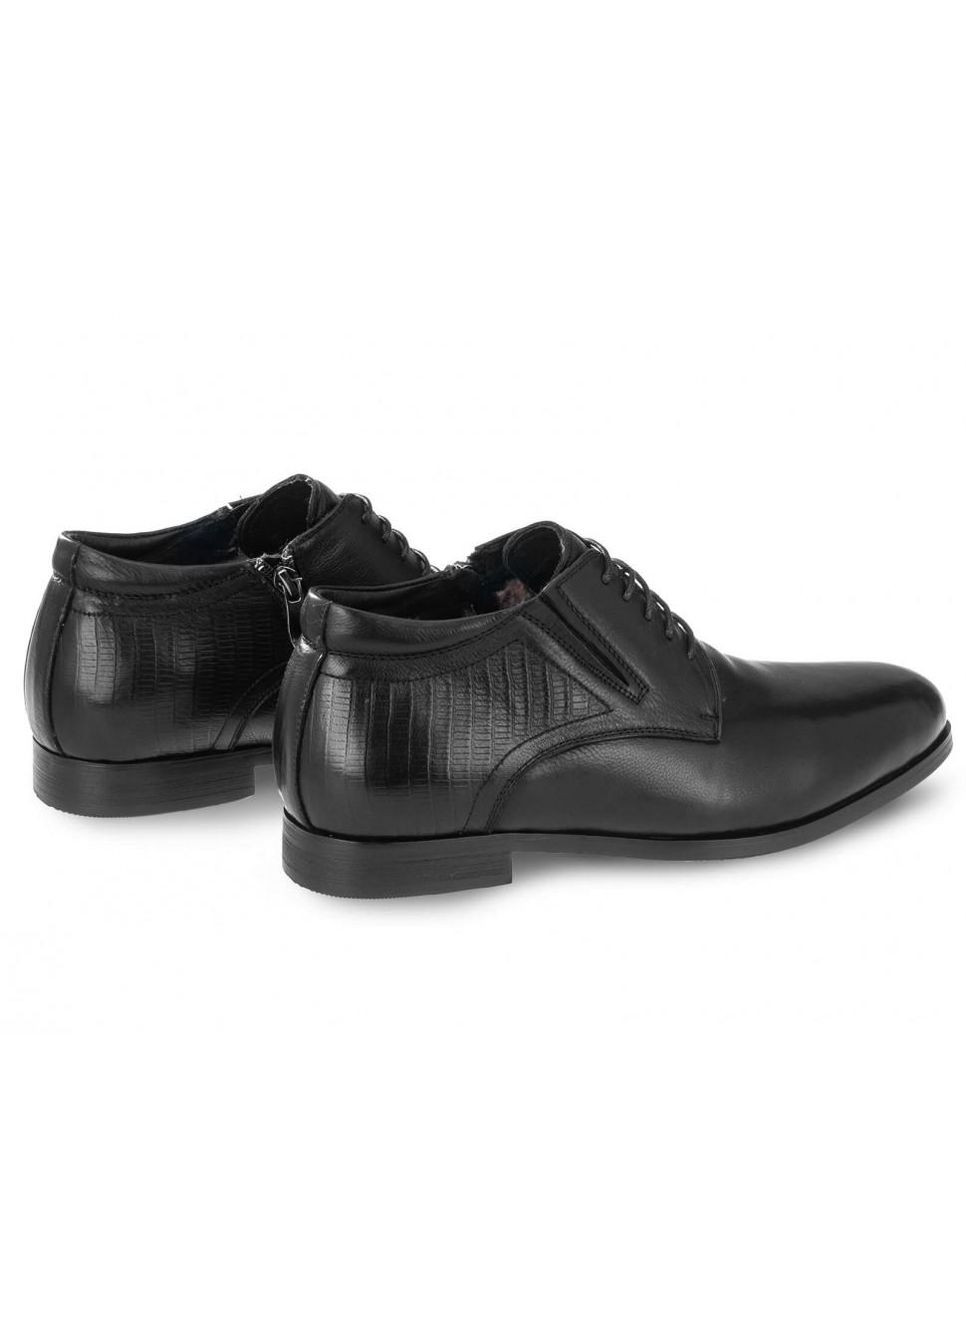 Черные зимние ботинки 7194159 цвет черный Dan Marest